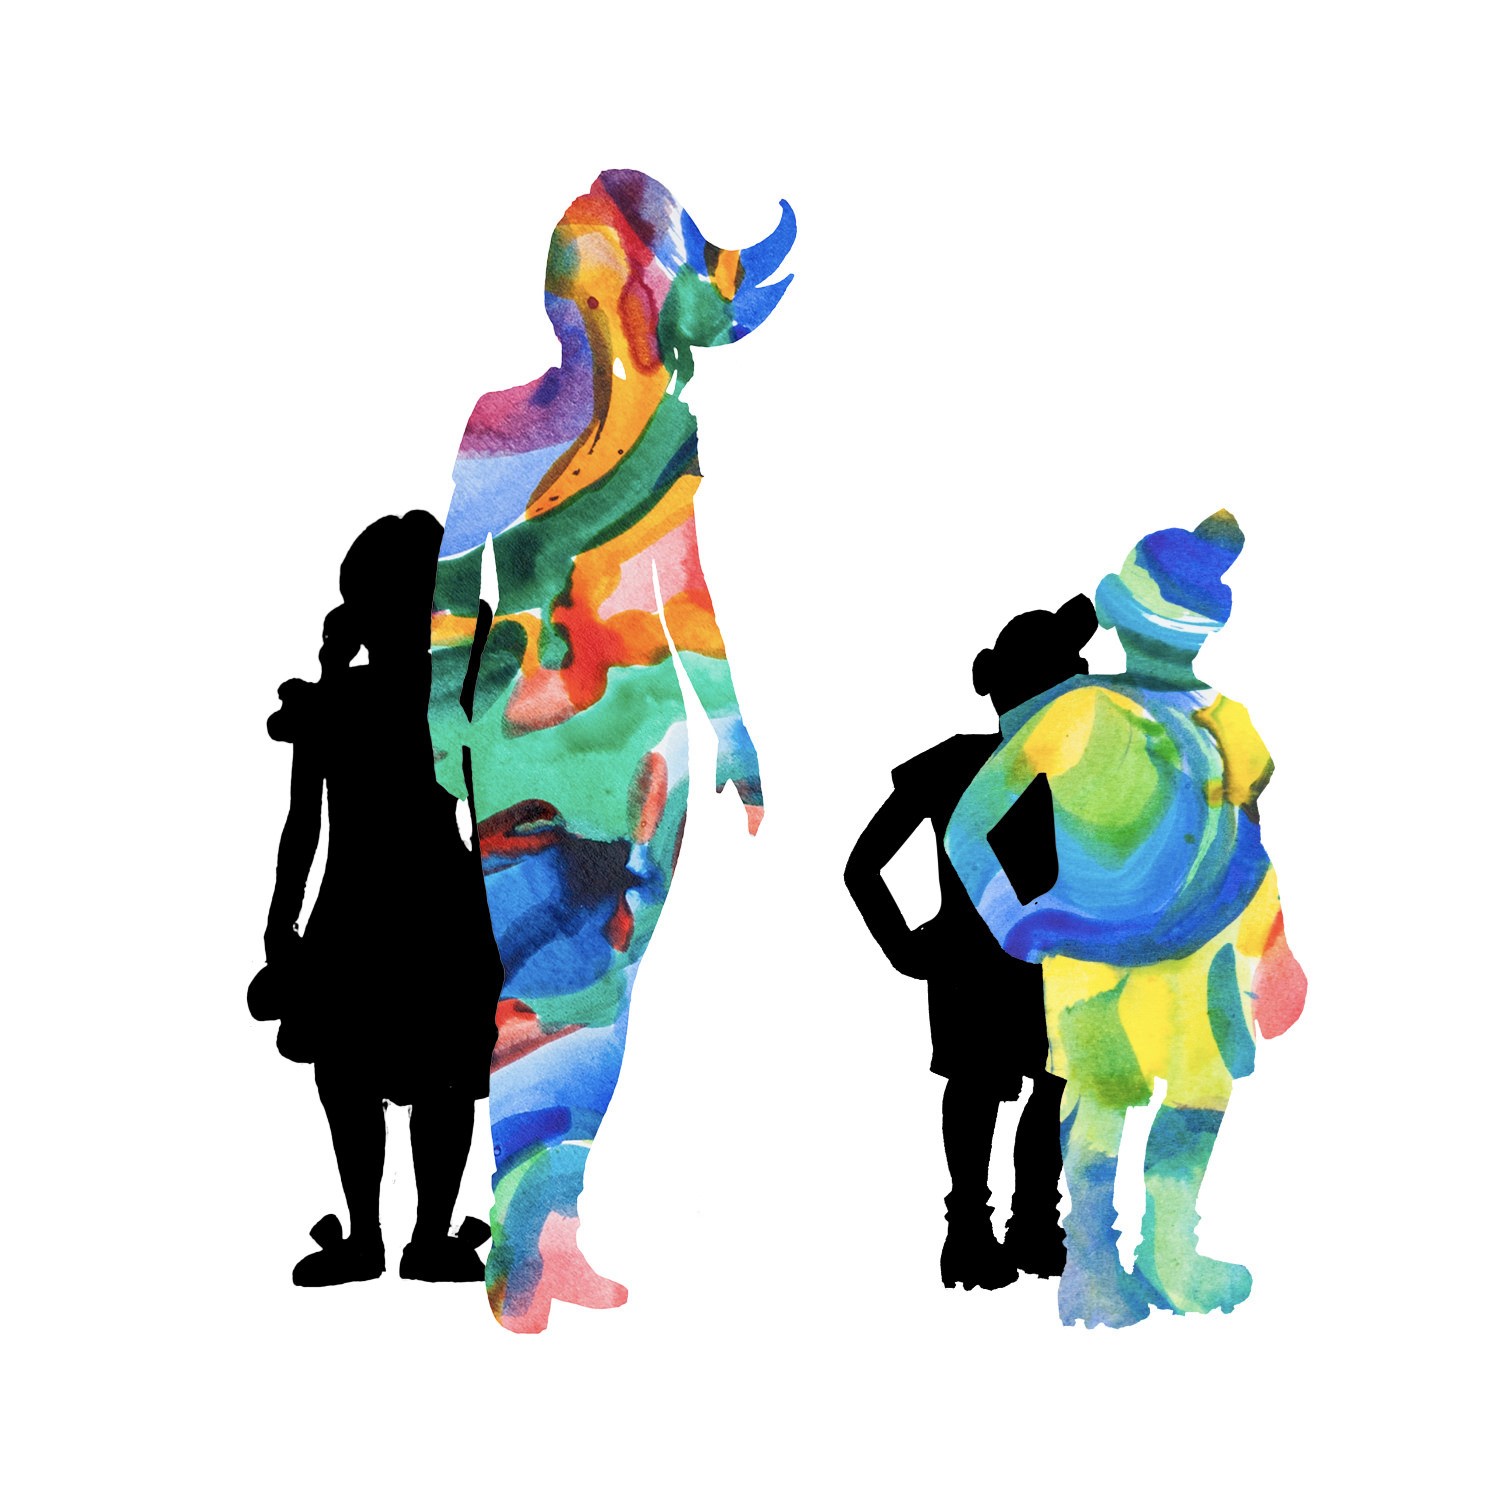 Grafik: Menschliche Silhouetten in bunten Farben